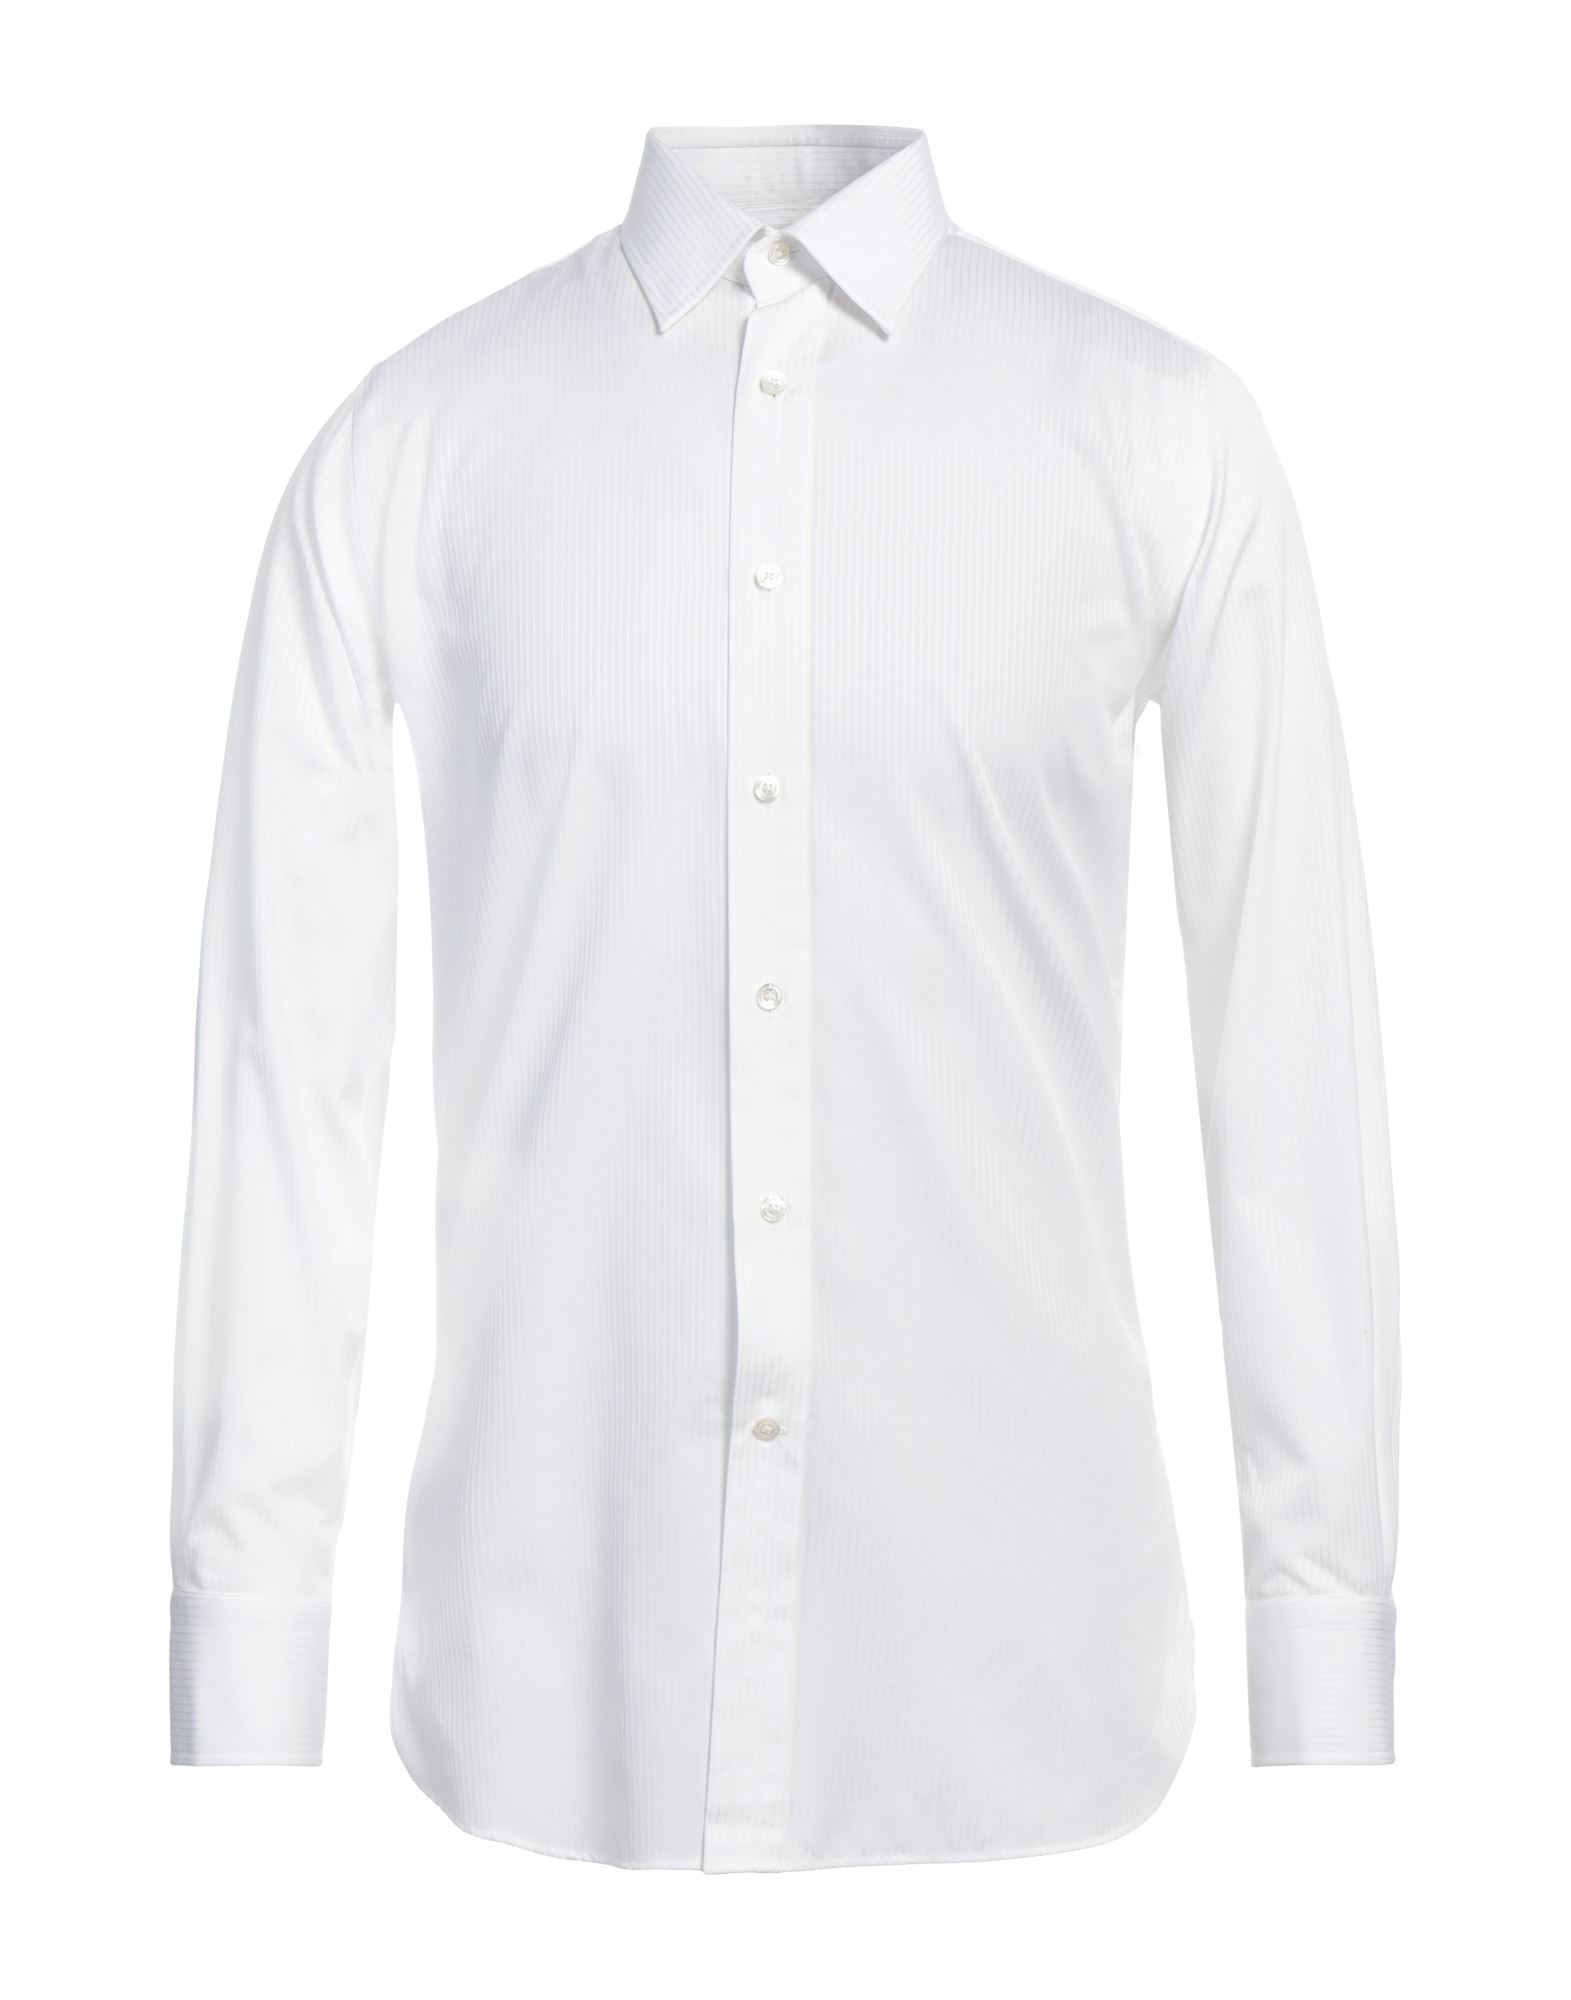 ダンヒル(dunhill) メンズシャツ・ワイシャツ | 通販・人気ランキング